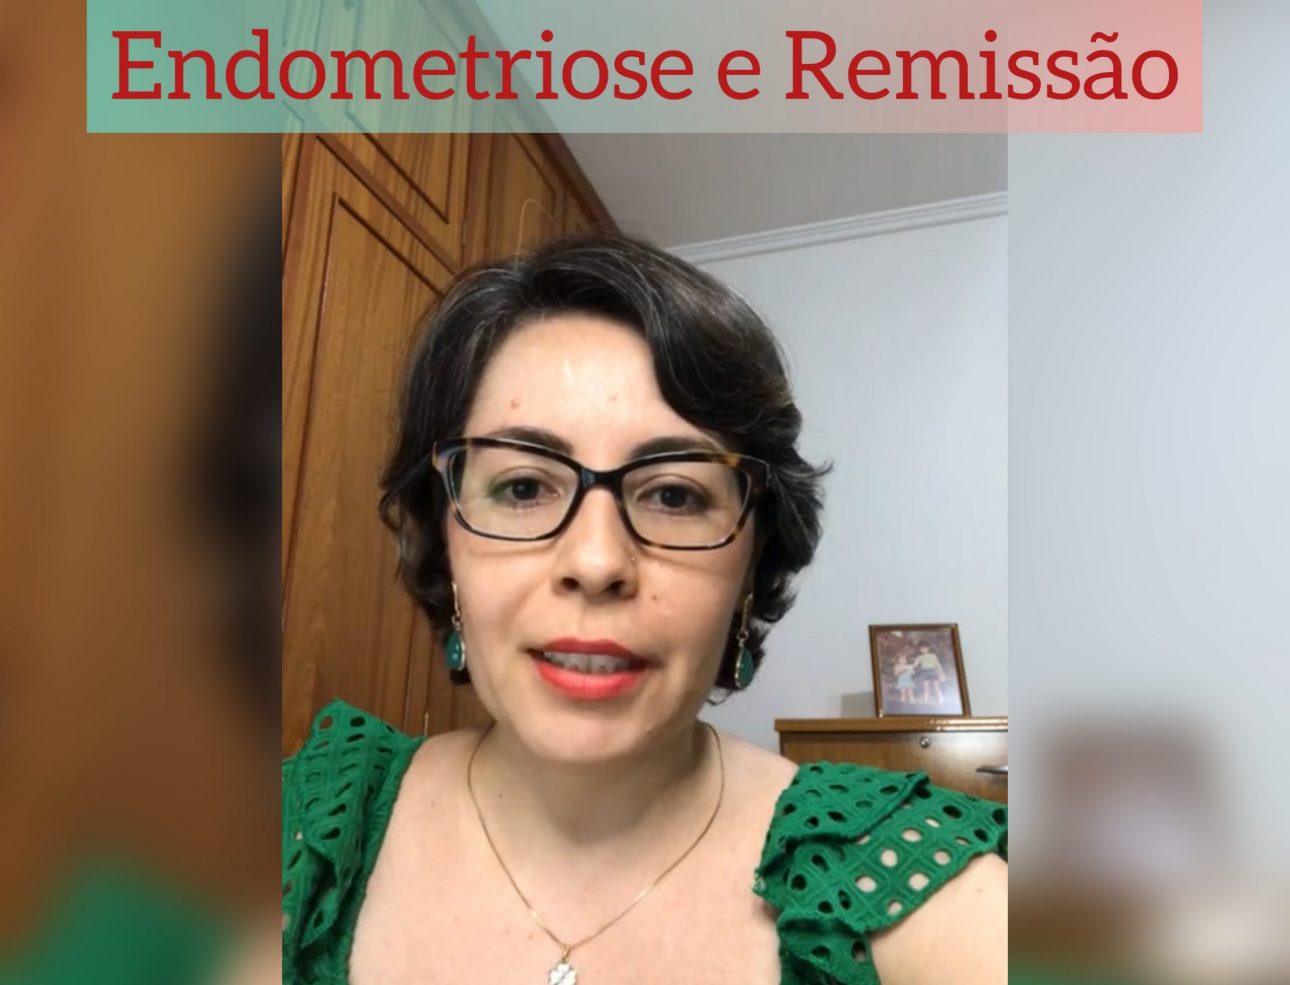 Live endometriose remissão